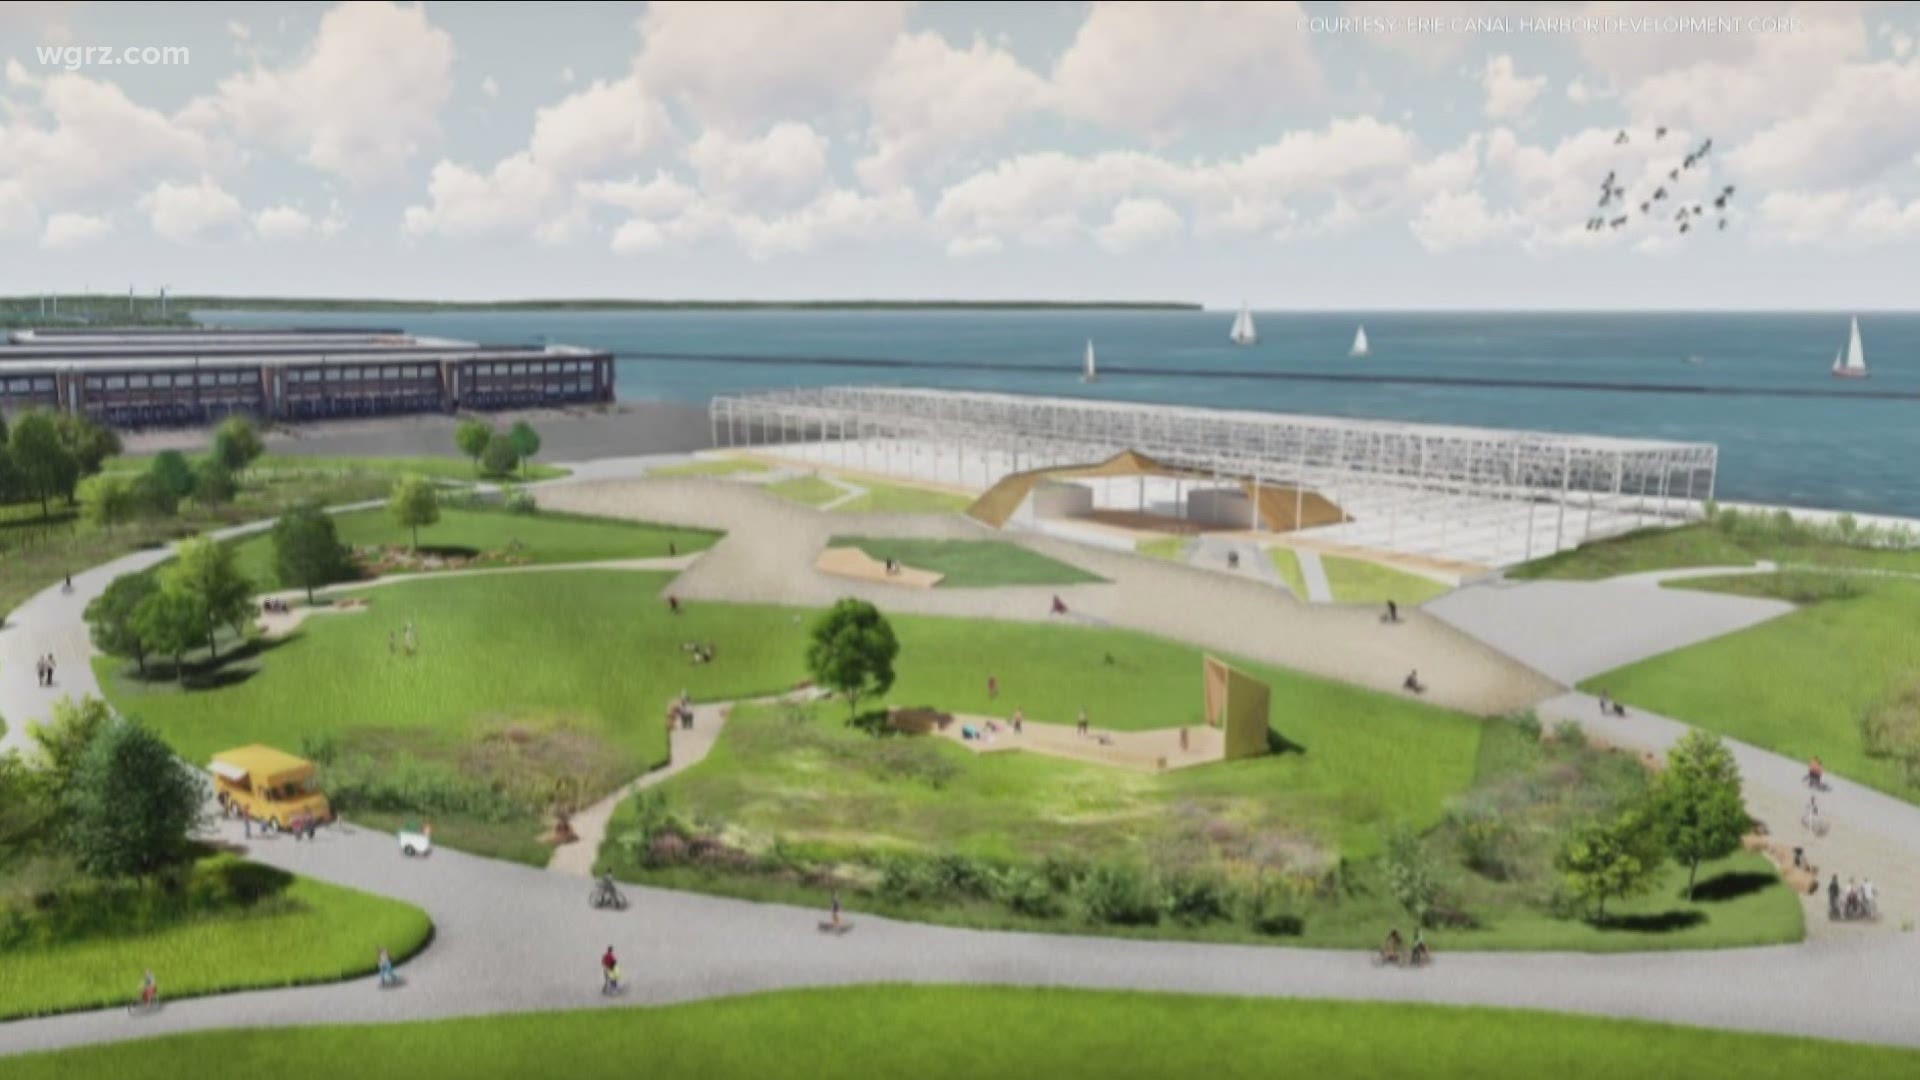 Lawsuit against Outer Harbor amphitheater privatizing development